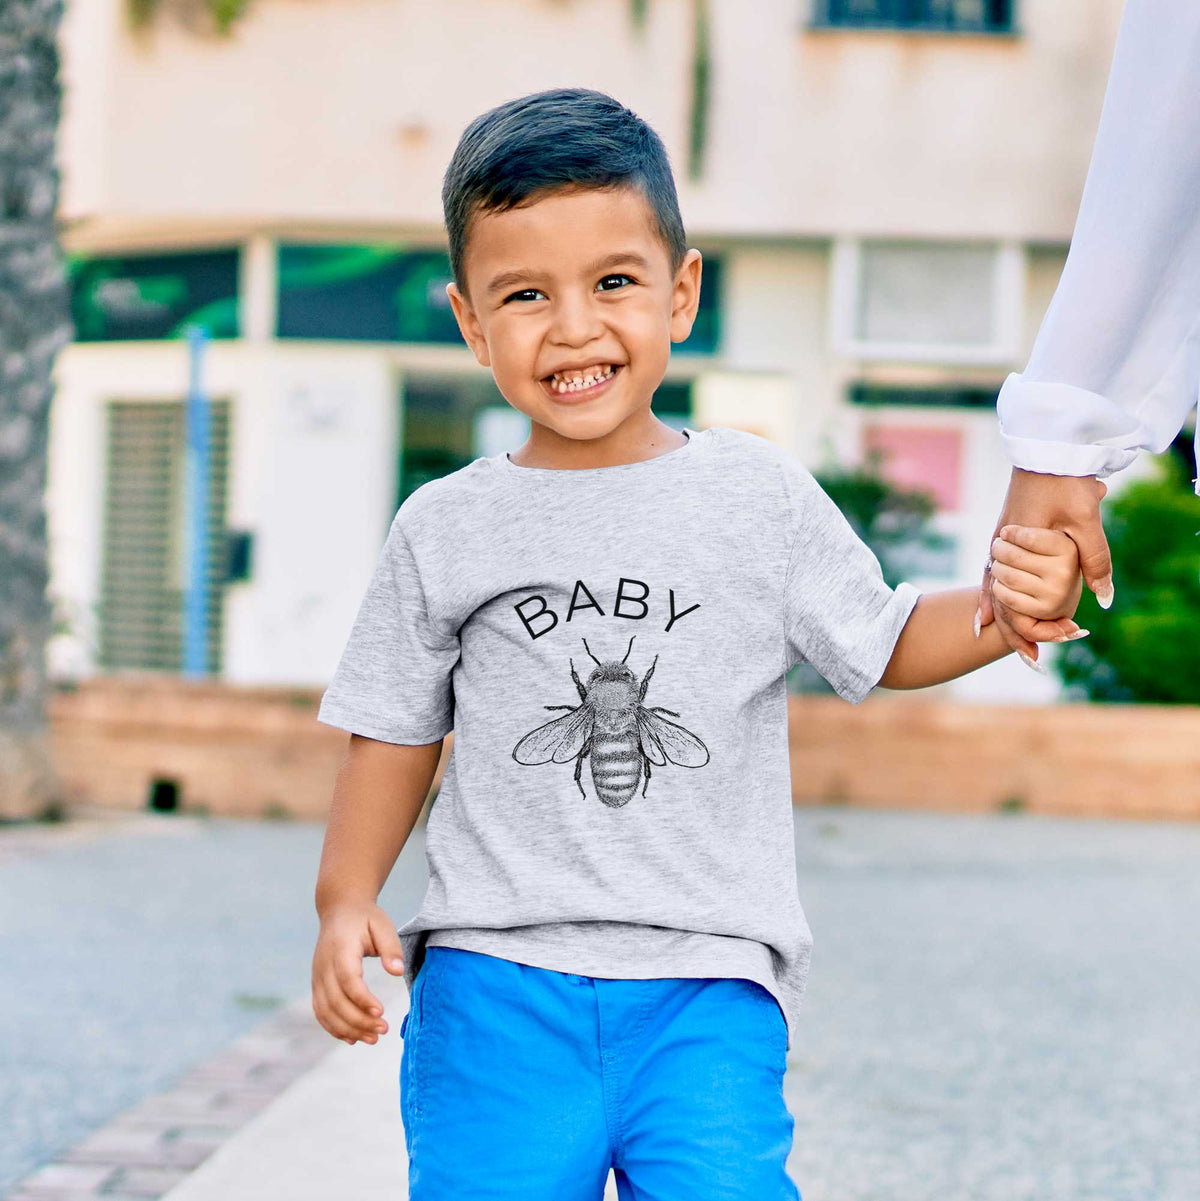 Baby Bee - Kids Shirt